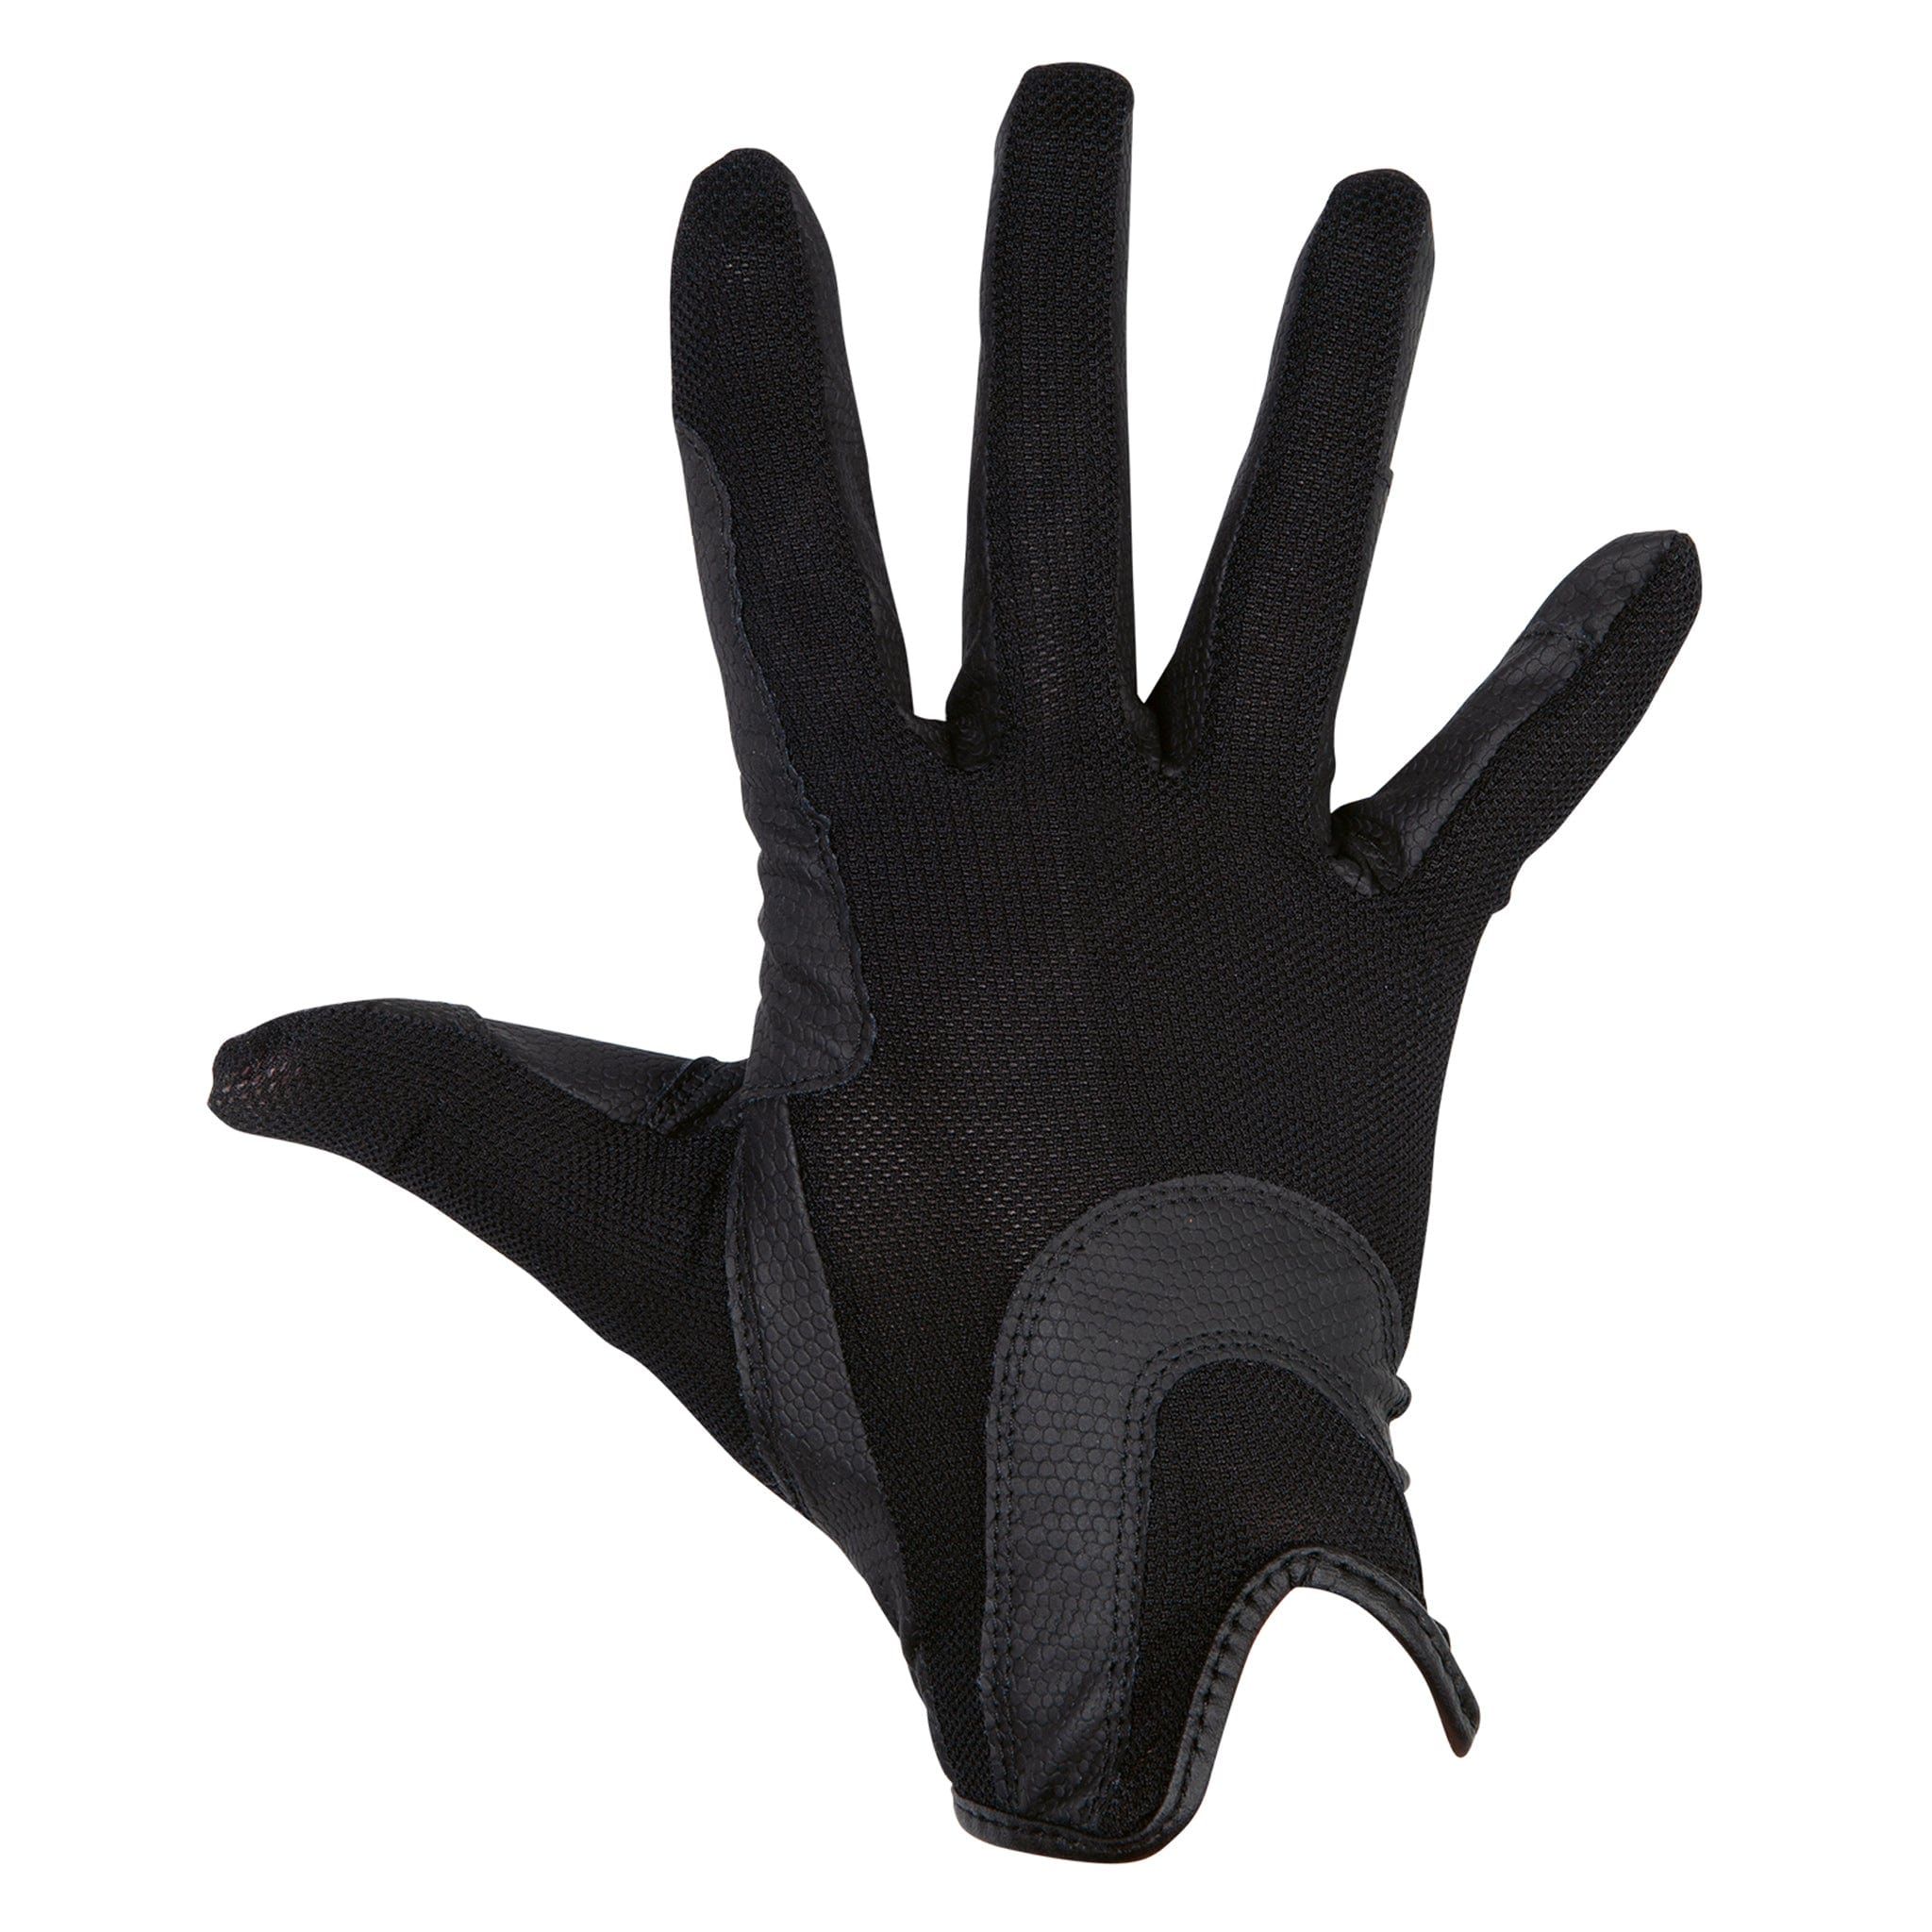 HKM Children's Mesh Grip Riding Gloves 12815 Black Back Hand